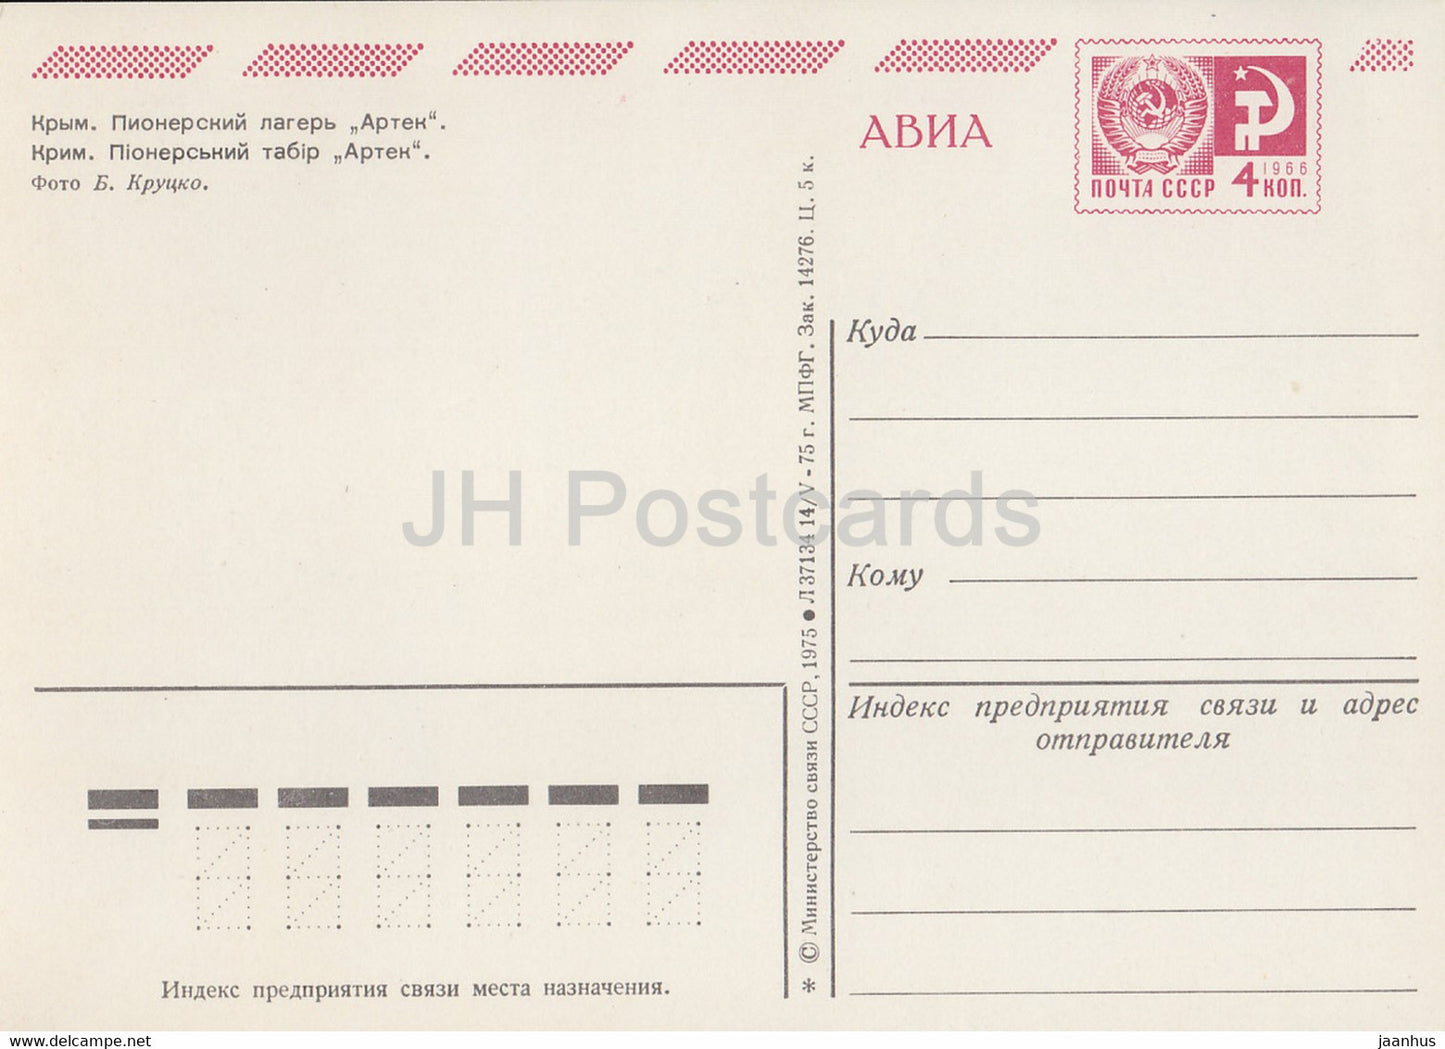 Crimea - Artek pioneer camp - AVIA - postal stationery - 1975 - Ukraine USSR - unused